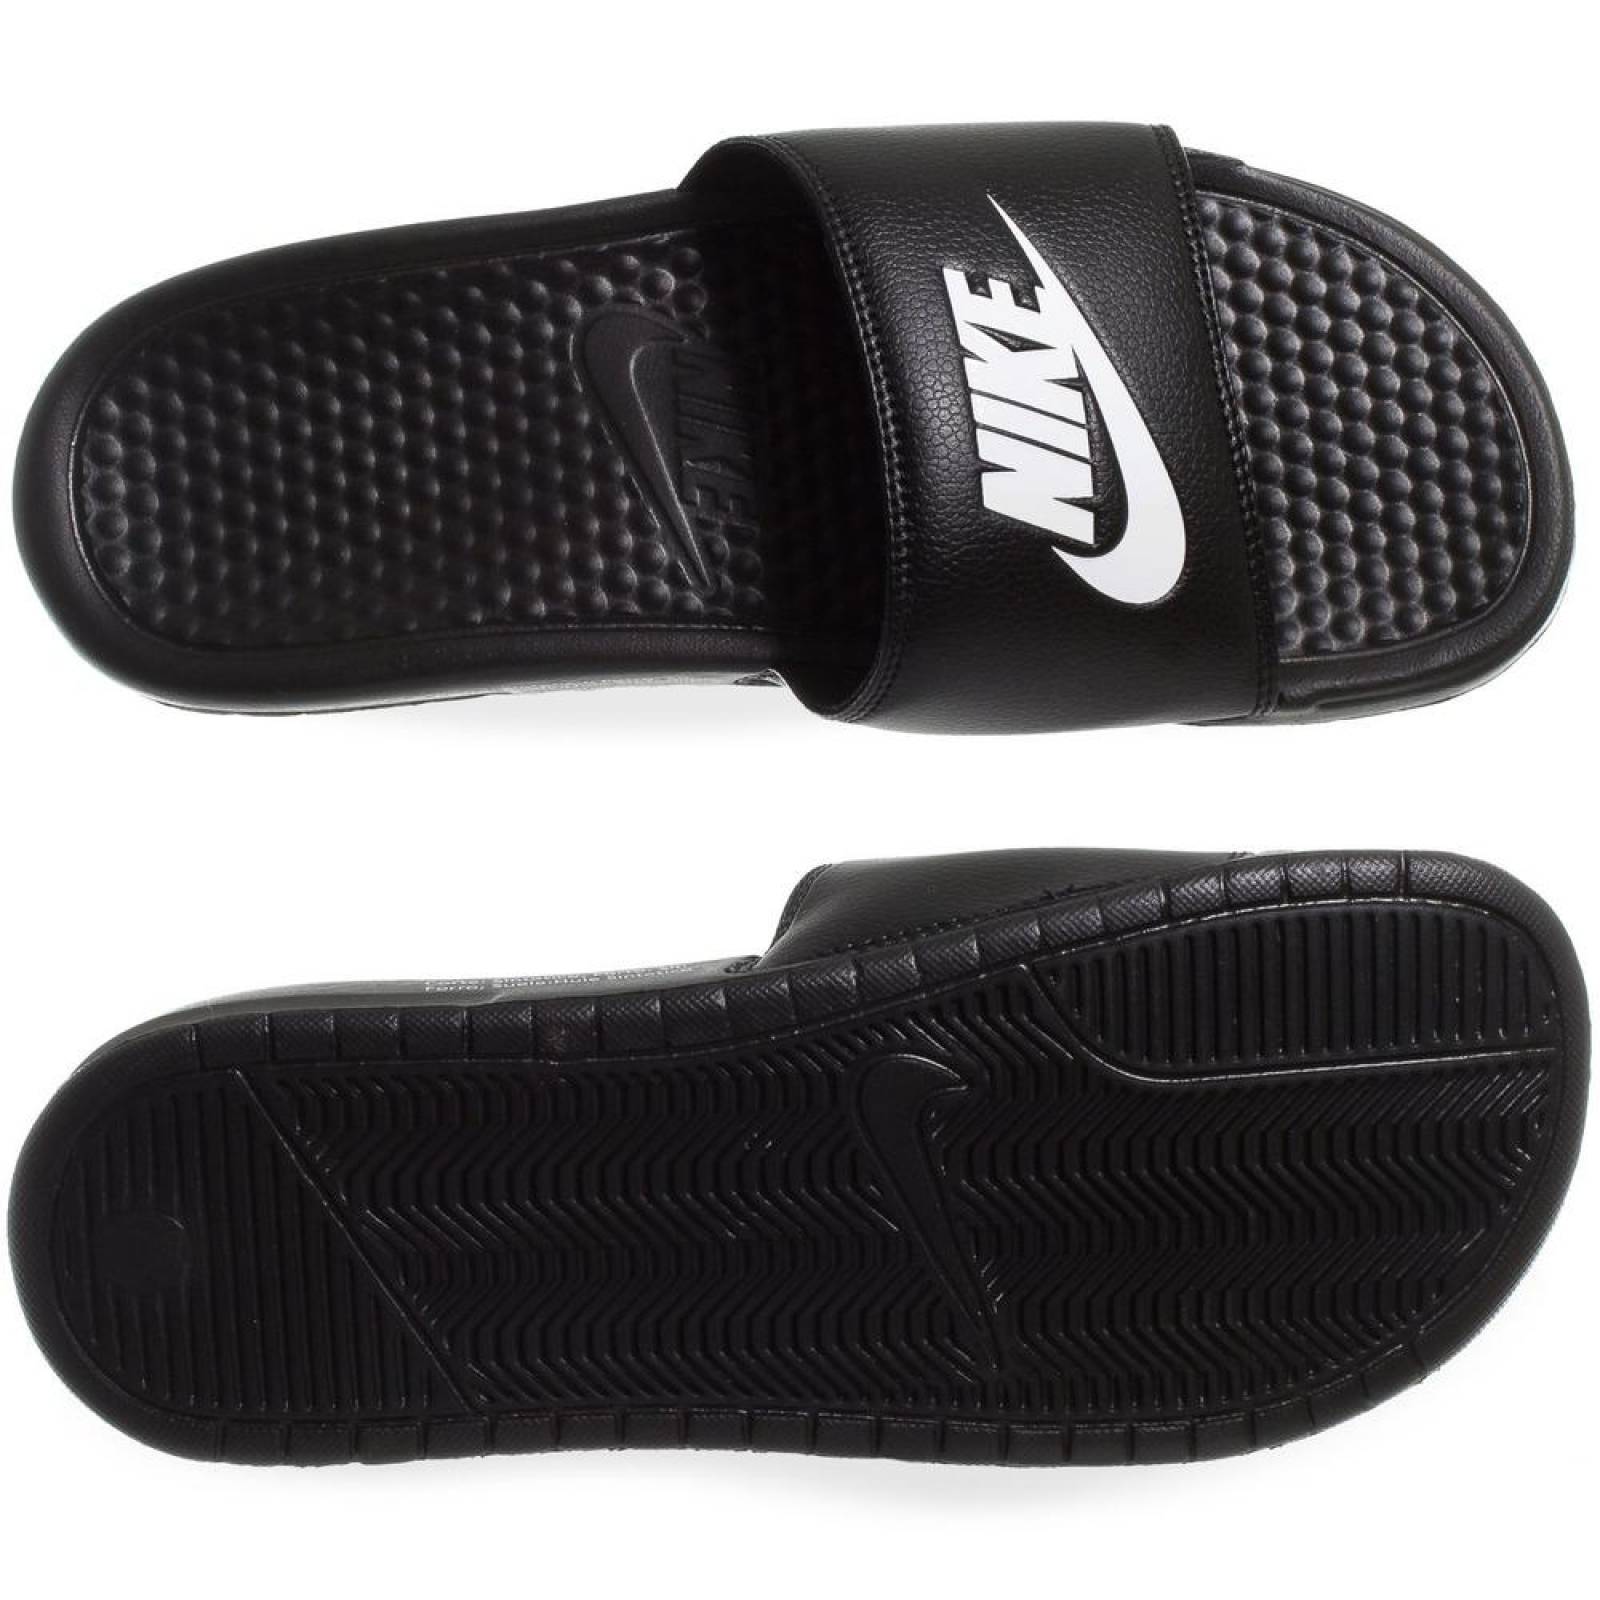 Sandalias Nike Benassi JDI - 343880090 - Negro - Hombre 